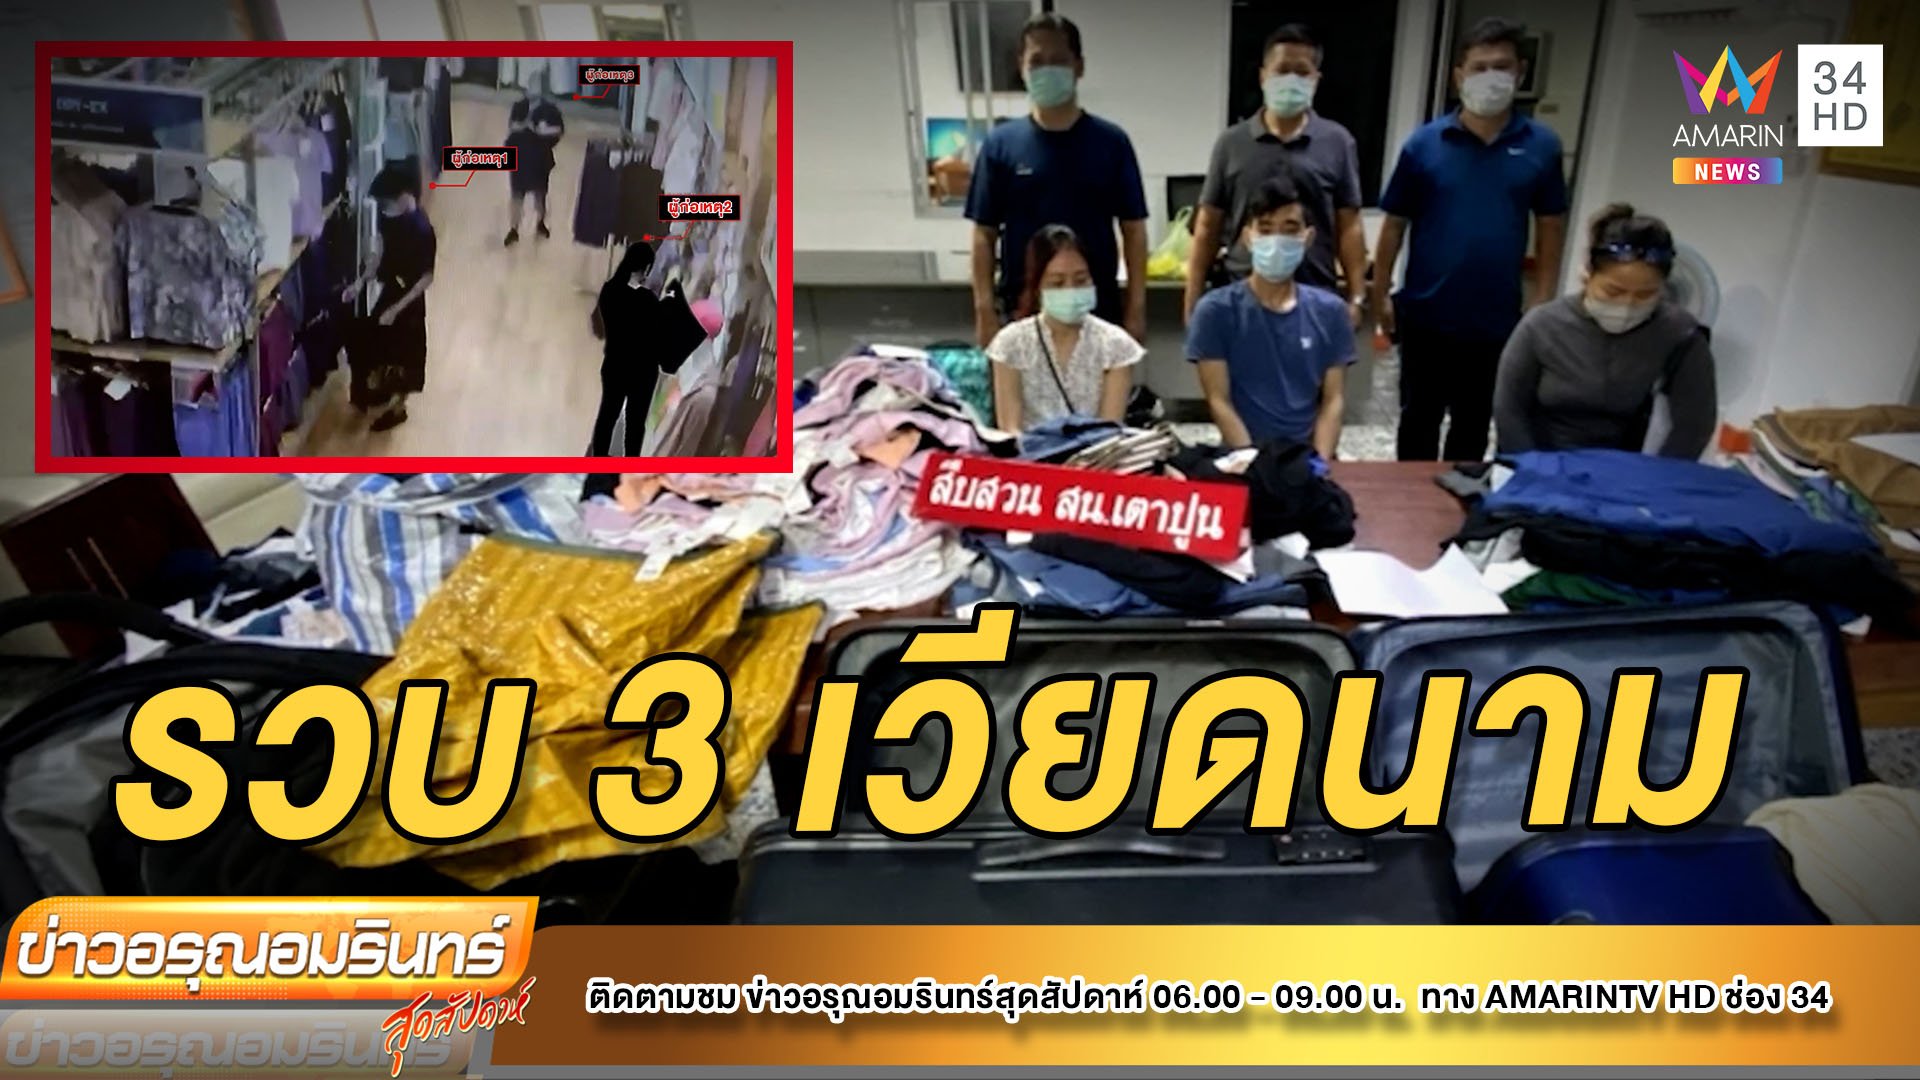 สืบเตาปูนรวบแก๊งเวียดนาม ตระเวนลักเสื้อผ้าร้านดัง | ข่าวอรุณอมรินทร์ | 24 เม.ย. 65 | AMARIN TVHD34